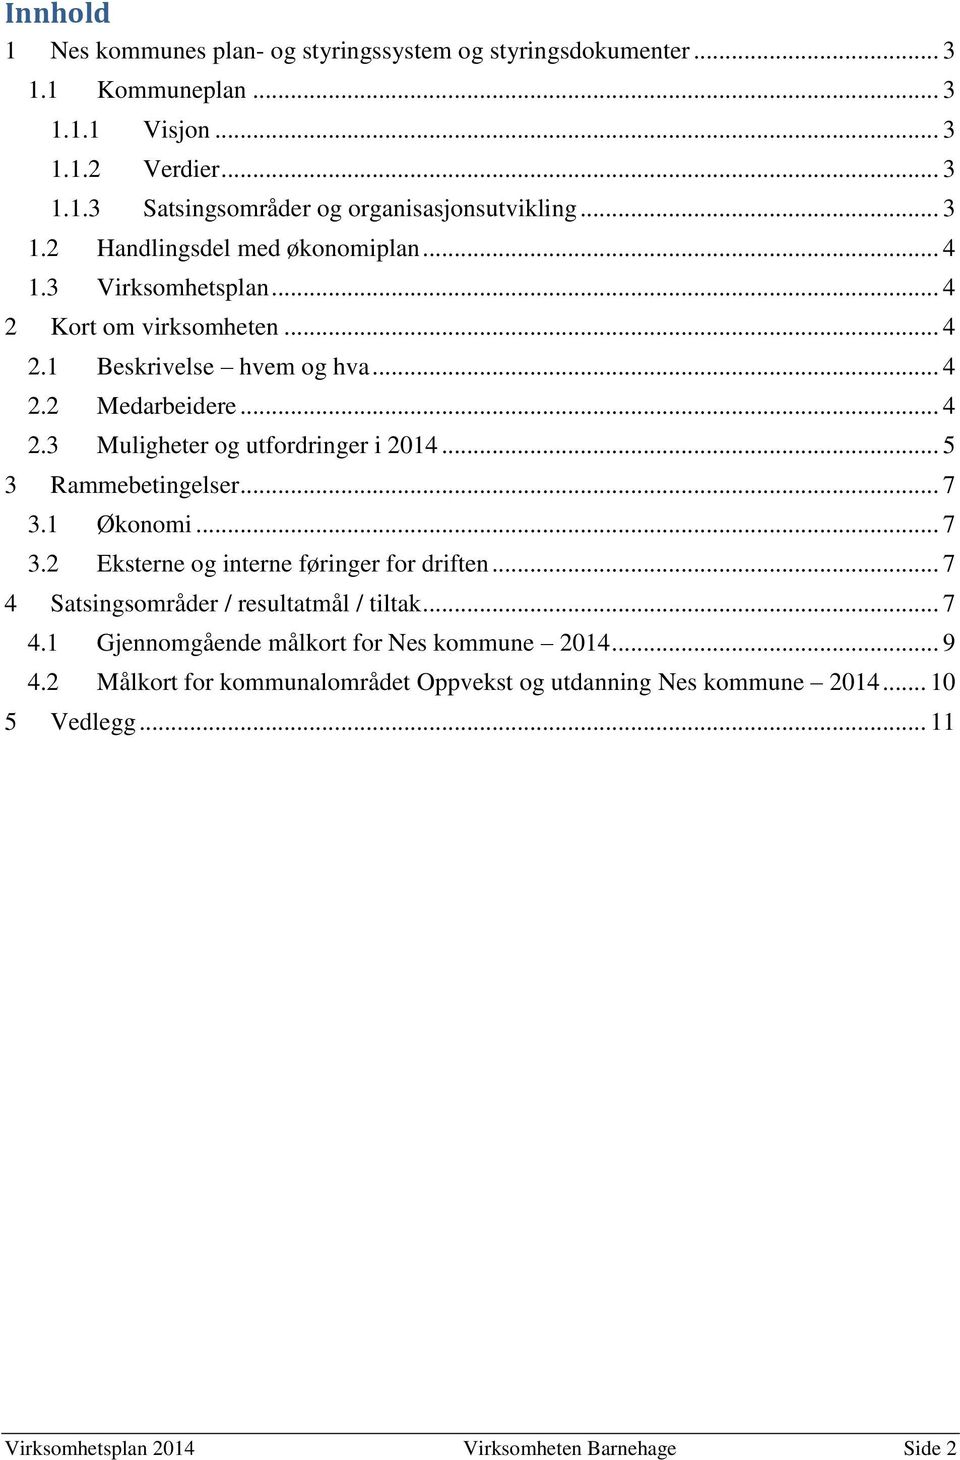 .. 5 3 Rammebetingelser... 7 3.1 Økonomi... 7 3.2 Eksterne og interne føringer for driften... 7 4 Satsingsområder / resultatmål / tiltak... 7 4.1 Gjennomgående målkort for Nes kommune 2014.